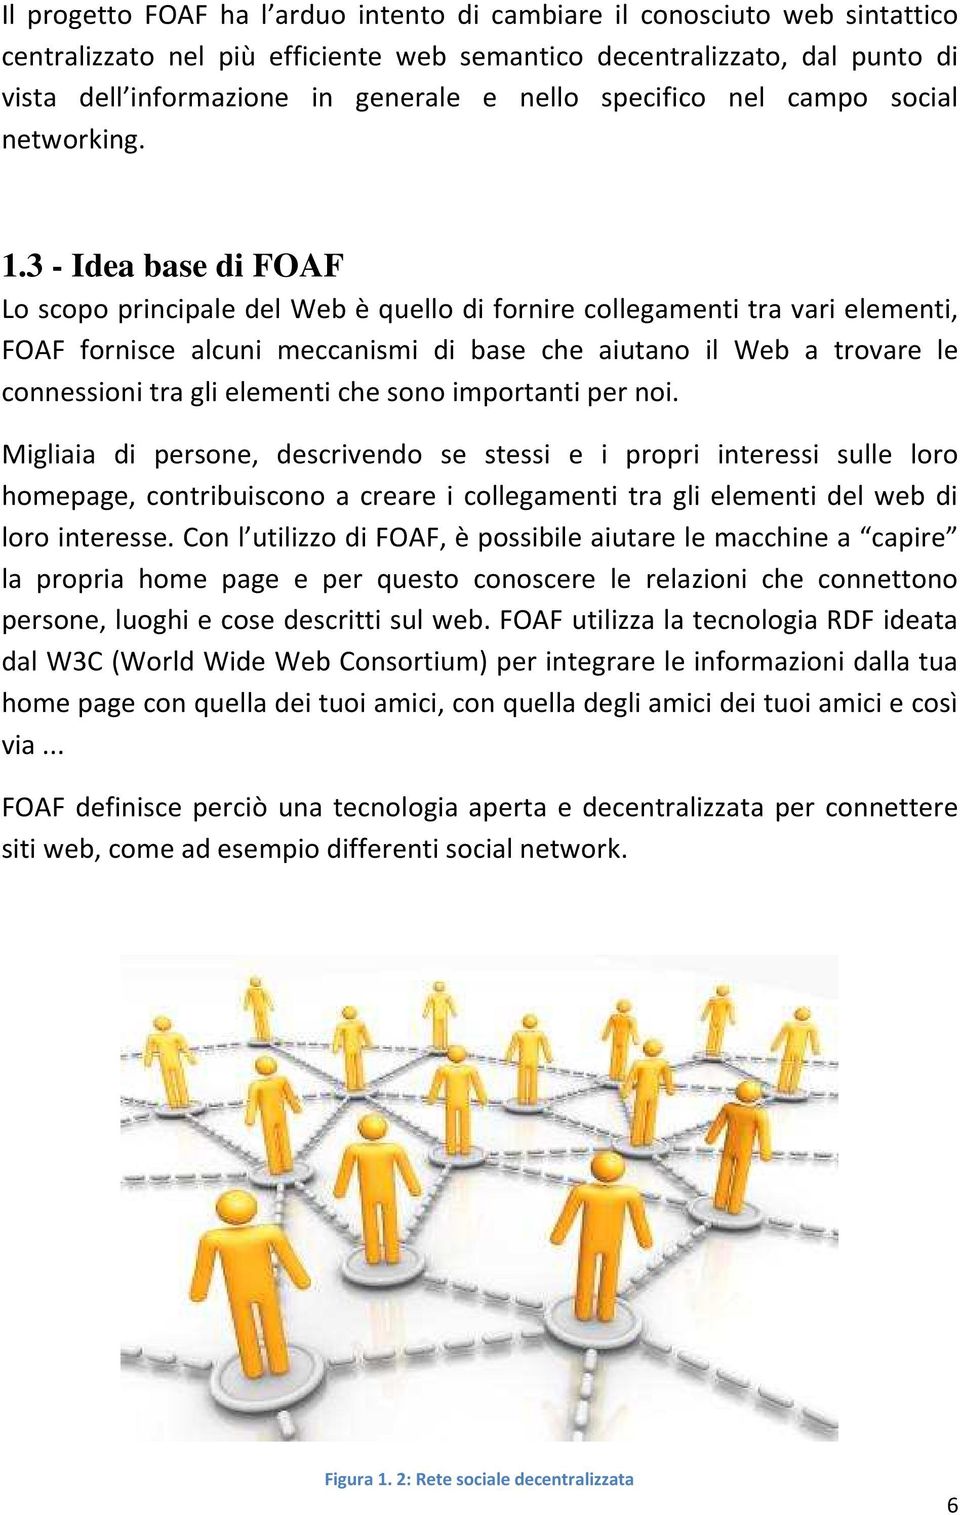 3 - Idea base di FOAF Lo scopo principale del Web è quello di fornire collegamenti tra vari elementi, FOAF fornisce alcuni meccanismi di base che aiutano il Web a trovare le connessioni tra gli